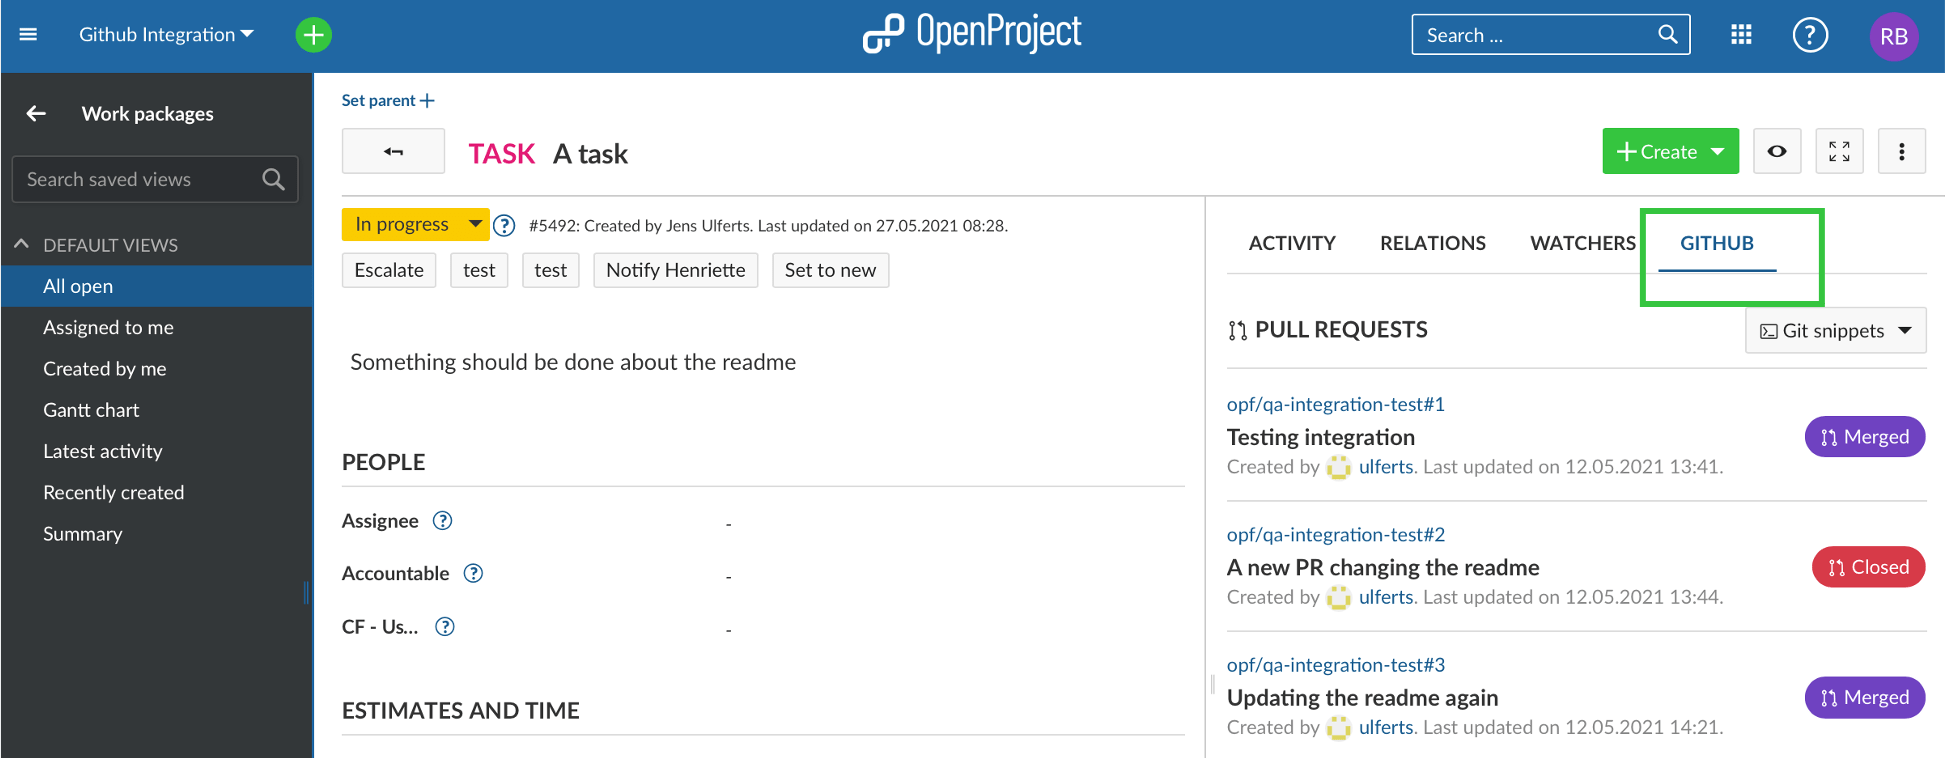 OpenProject GitHub integration